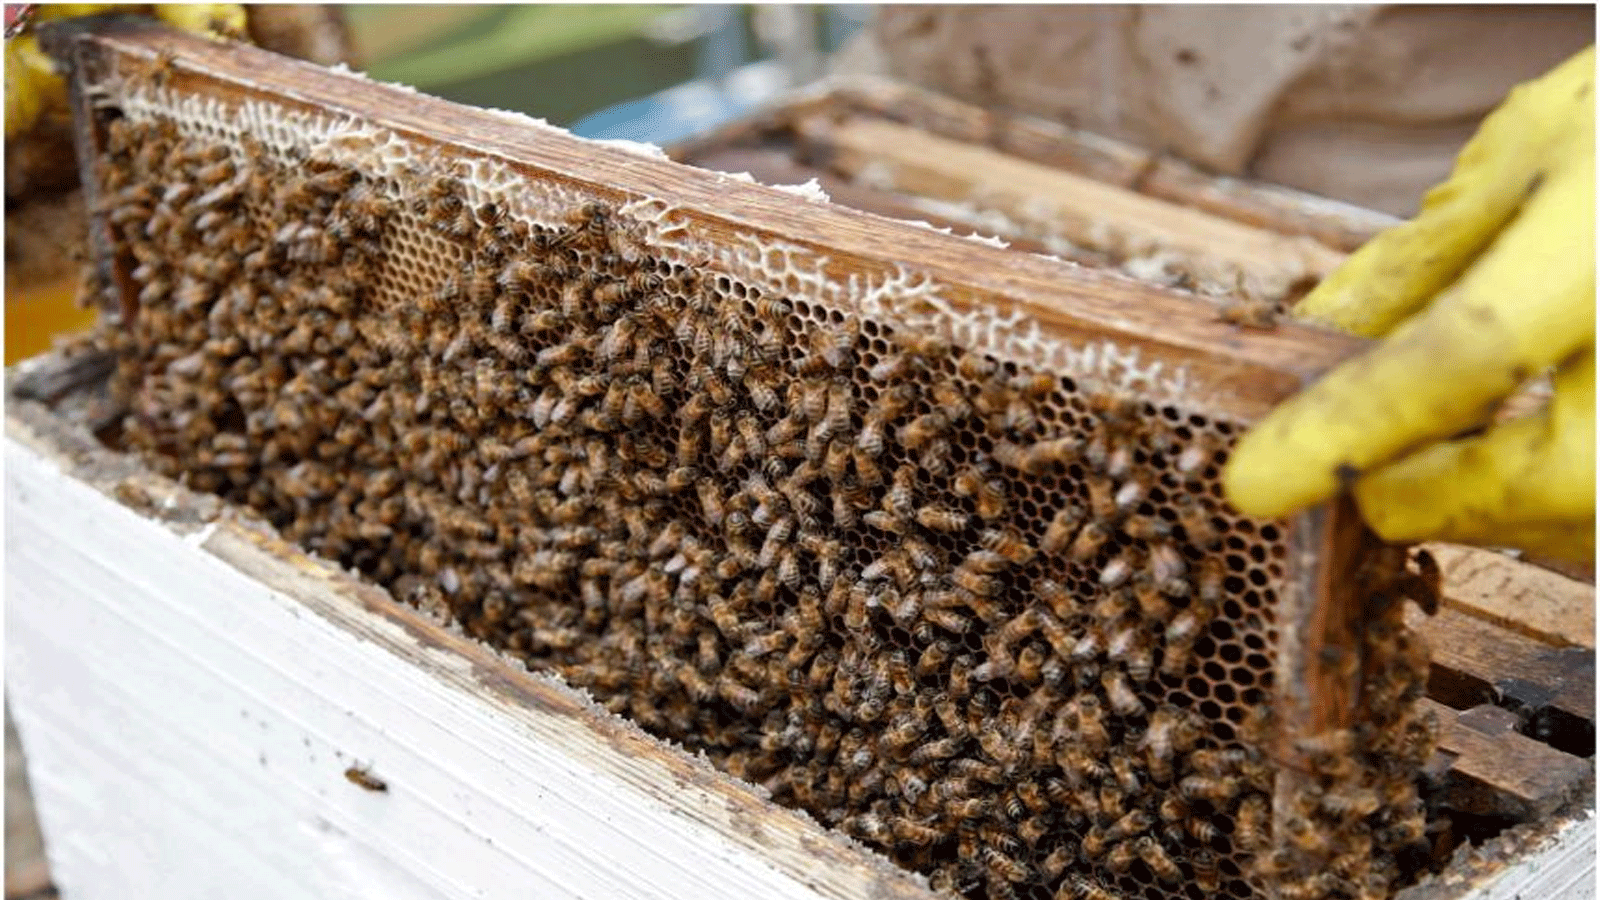  يسعى الباحثون الكولومبيون إلى حماية النحل، ويرتكز عمل الفريق على أنواع Apis mellifera ، أو Western Honey Bee ، وهي واحدة من حوالي 20000 نوع معروف في جميع أنحاء العالم.